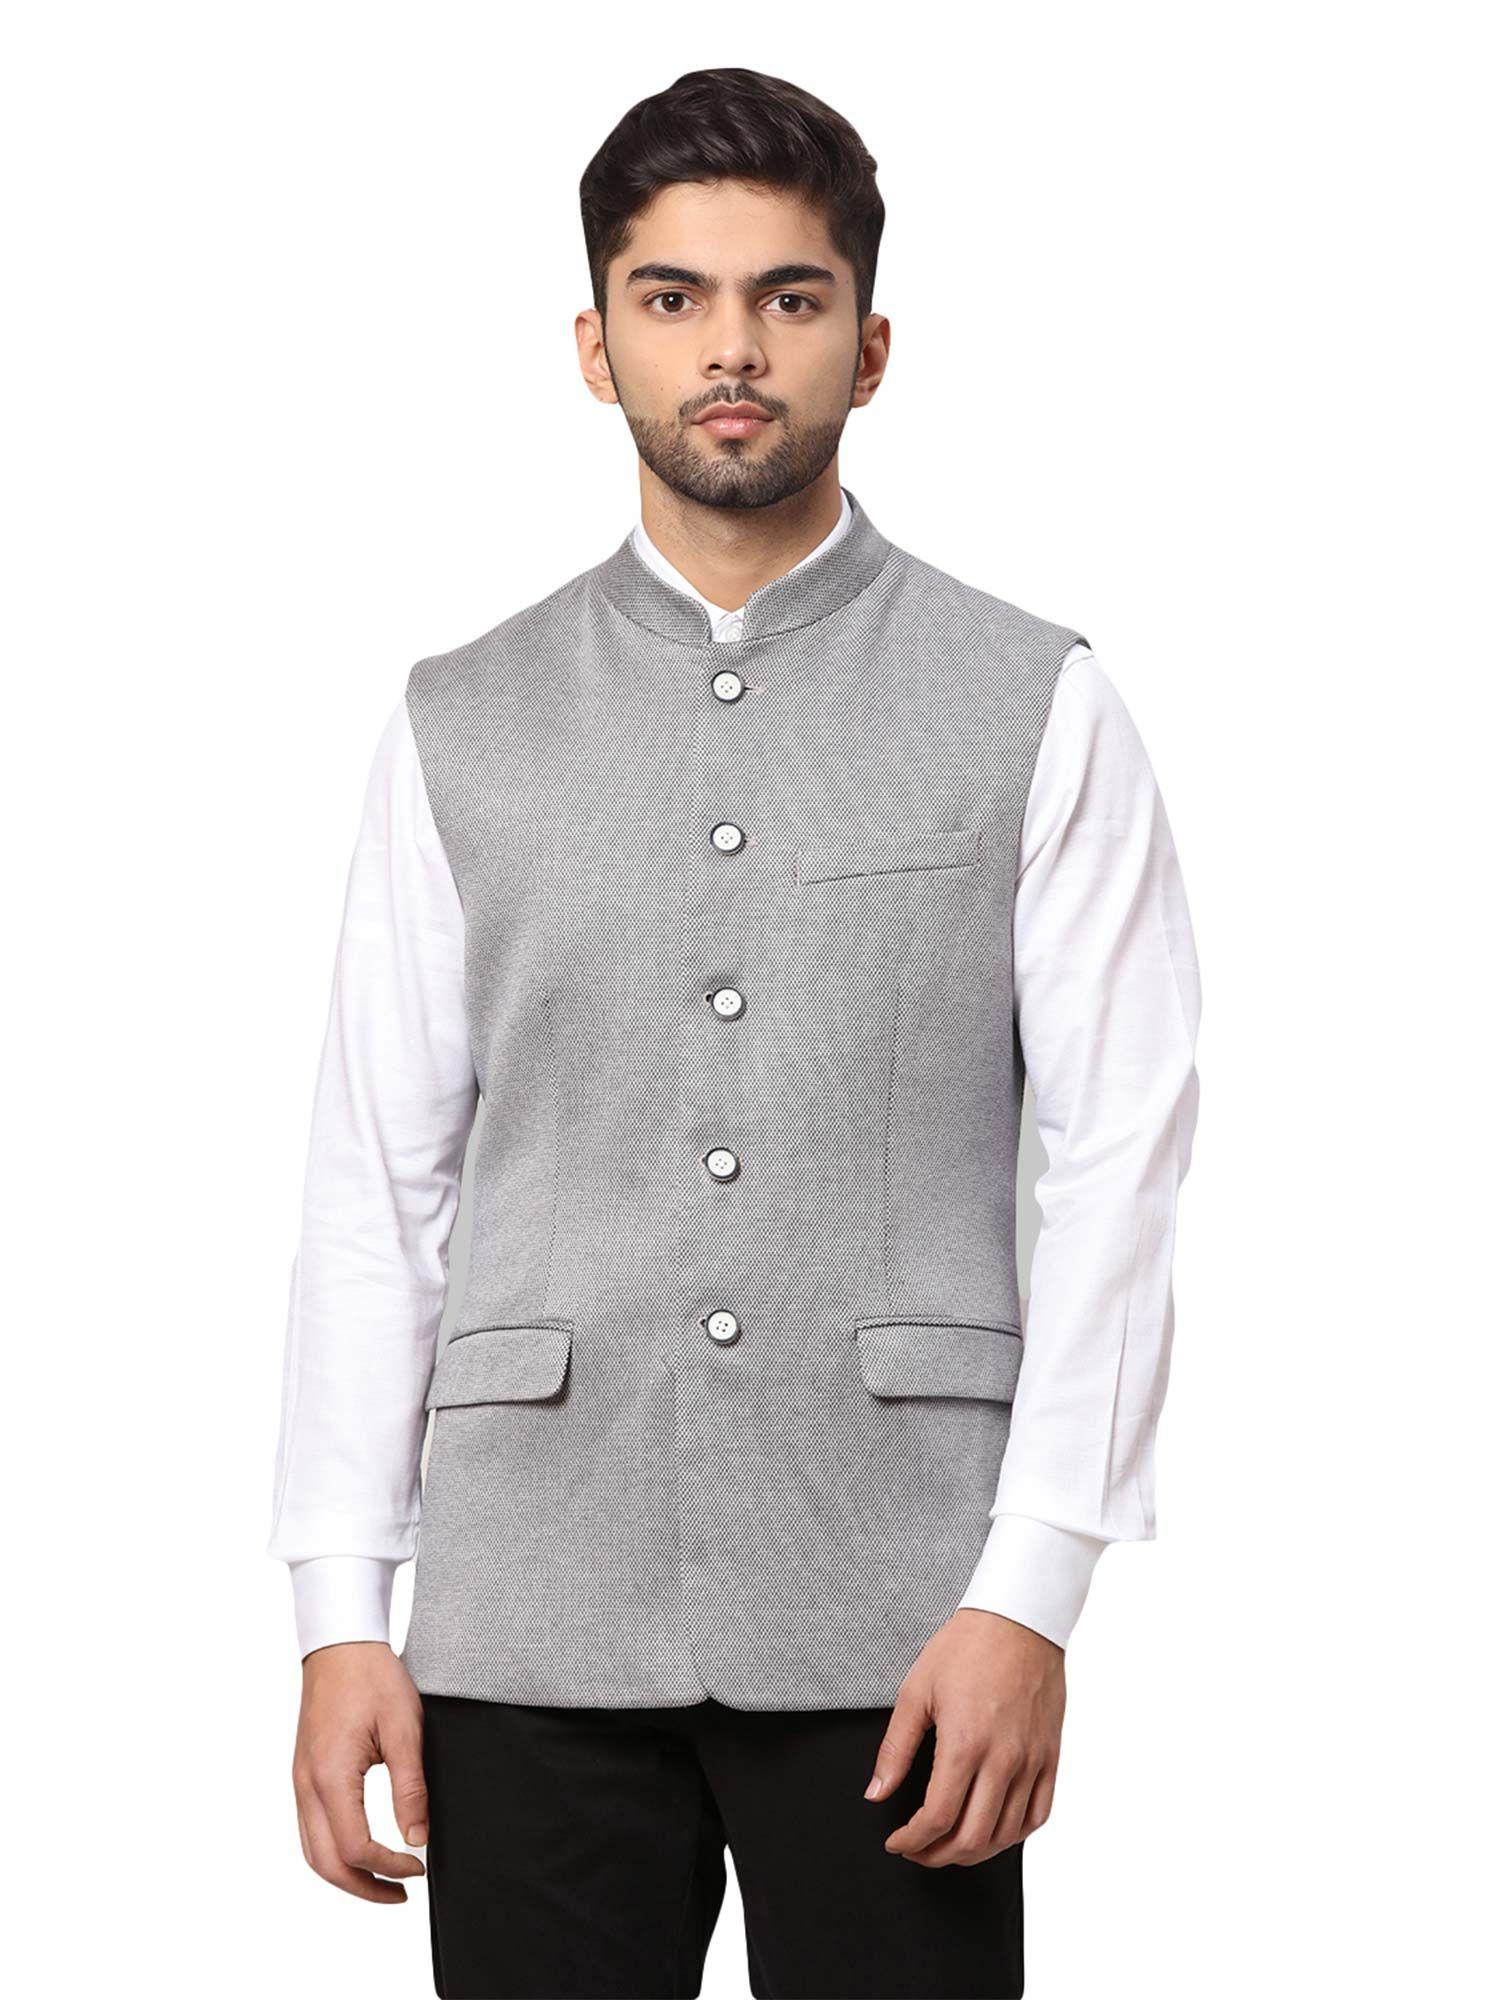 medium grey waistcoat